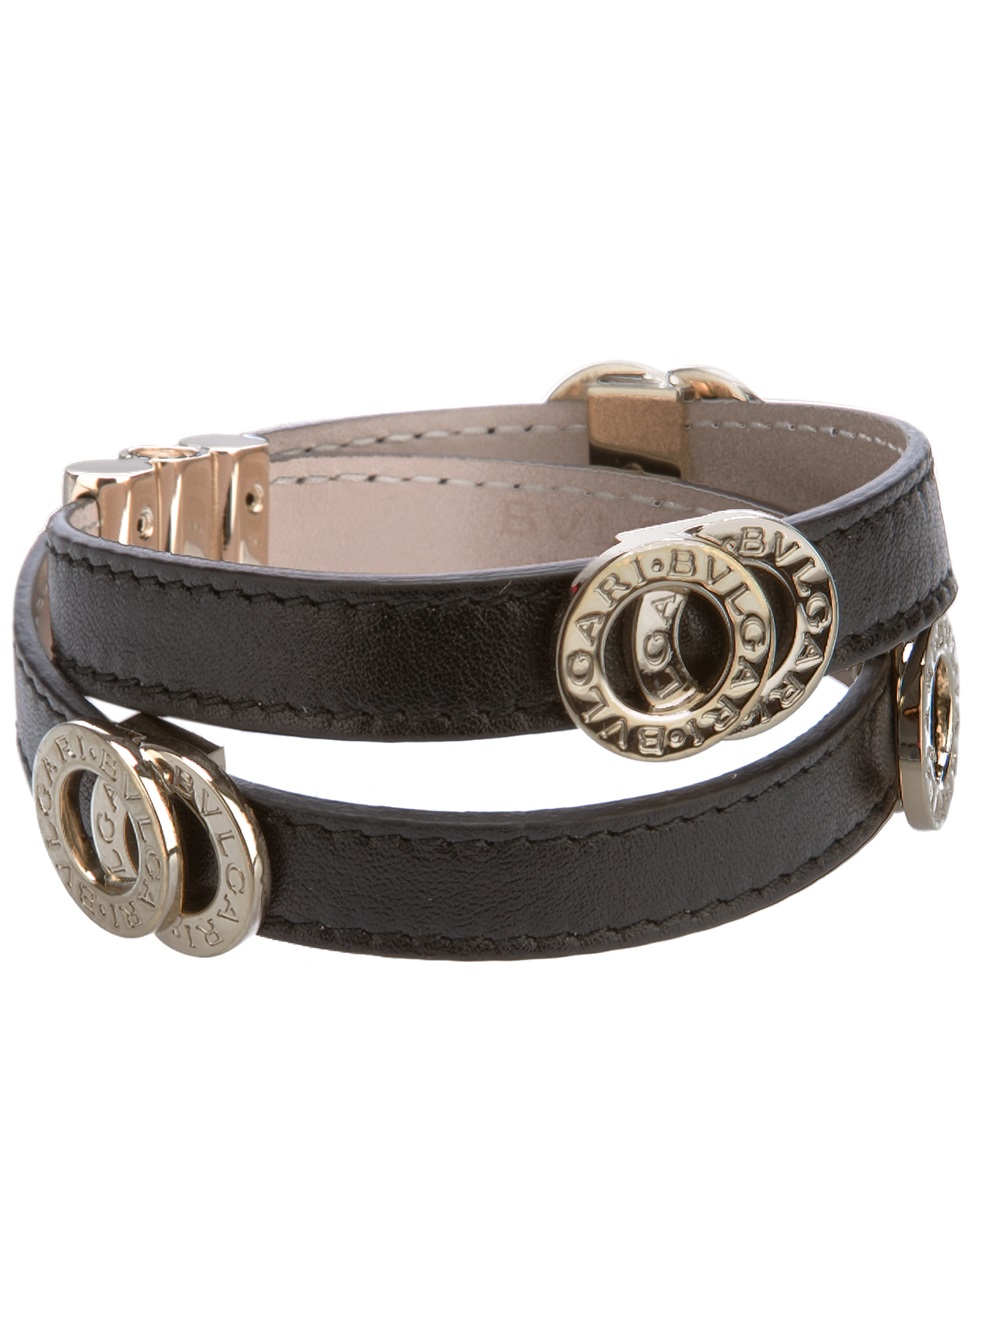 bulgari leather bracelets